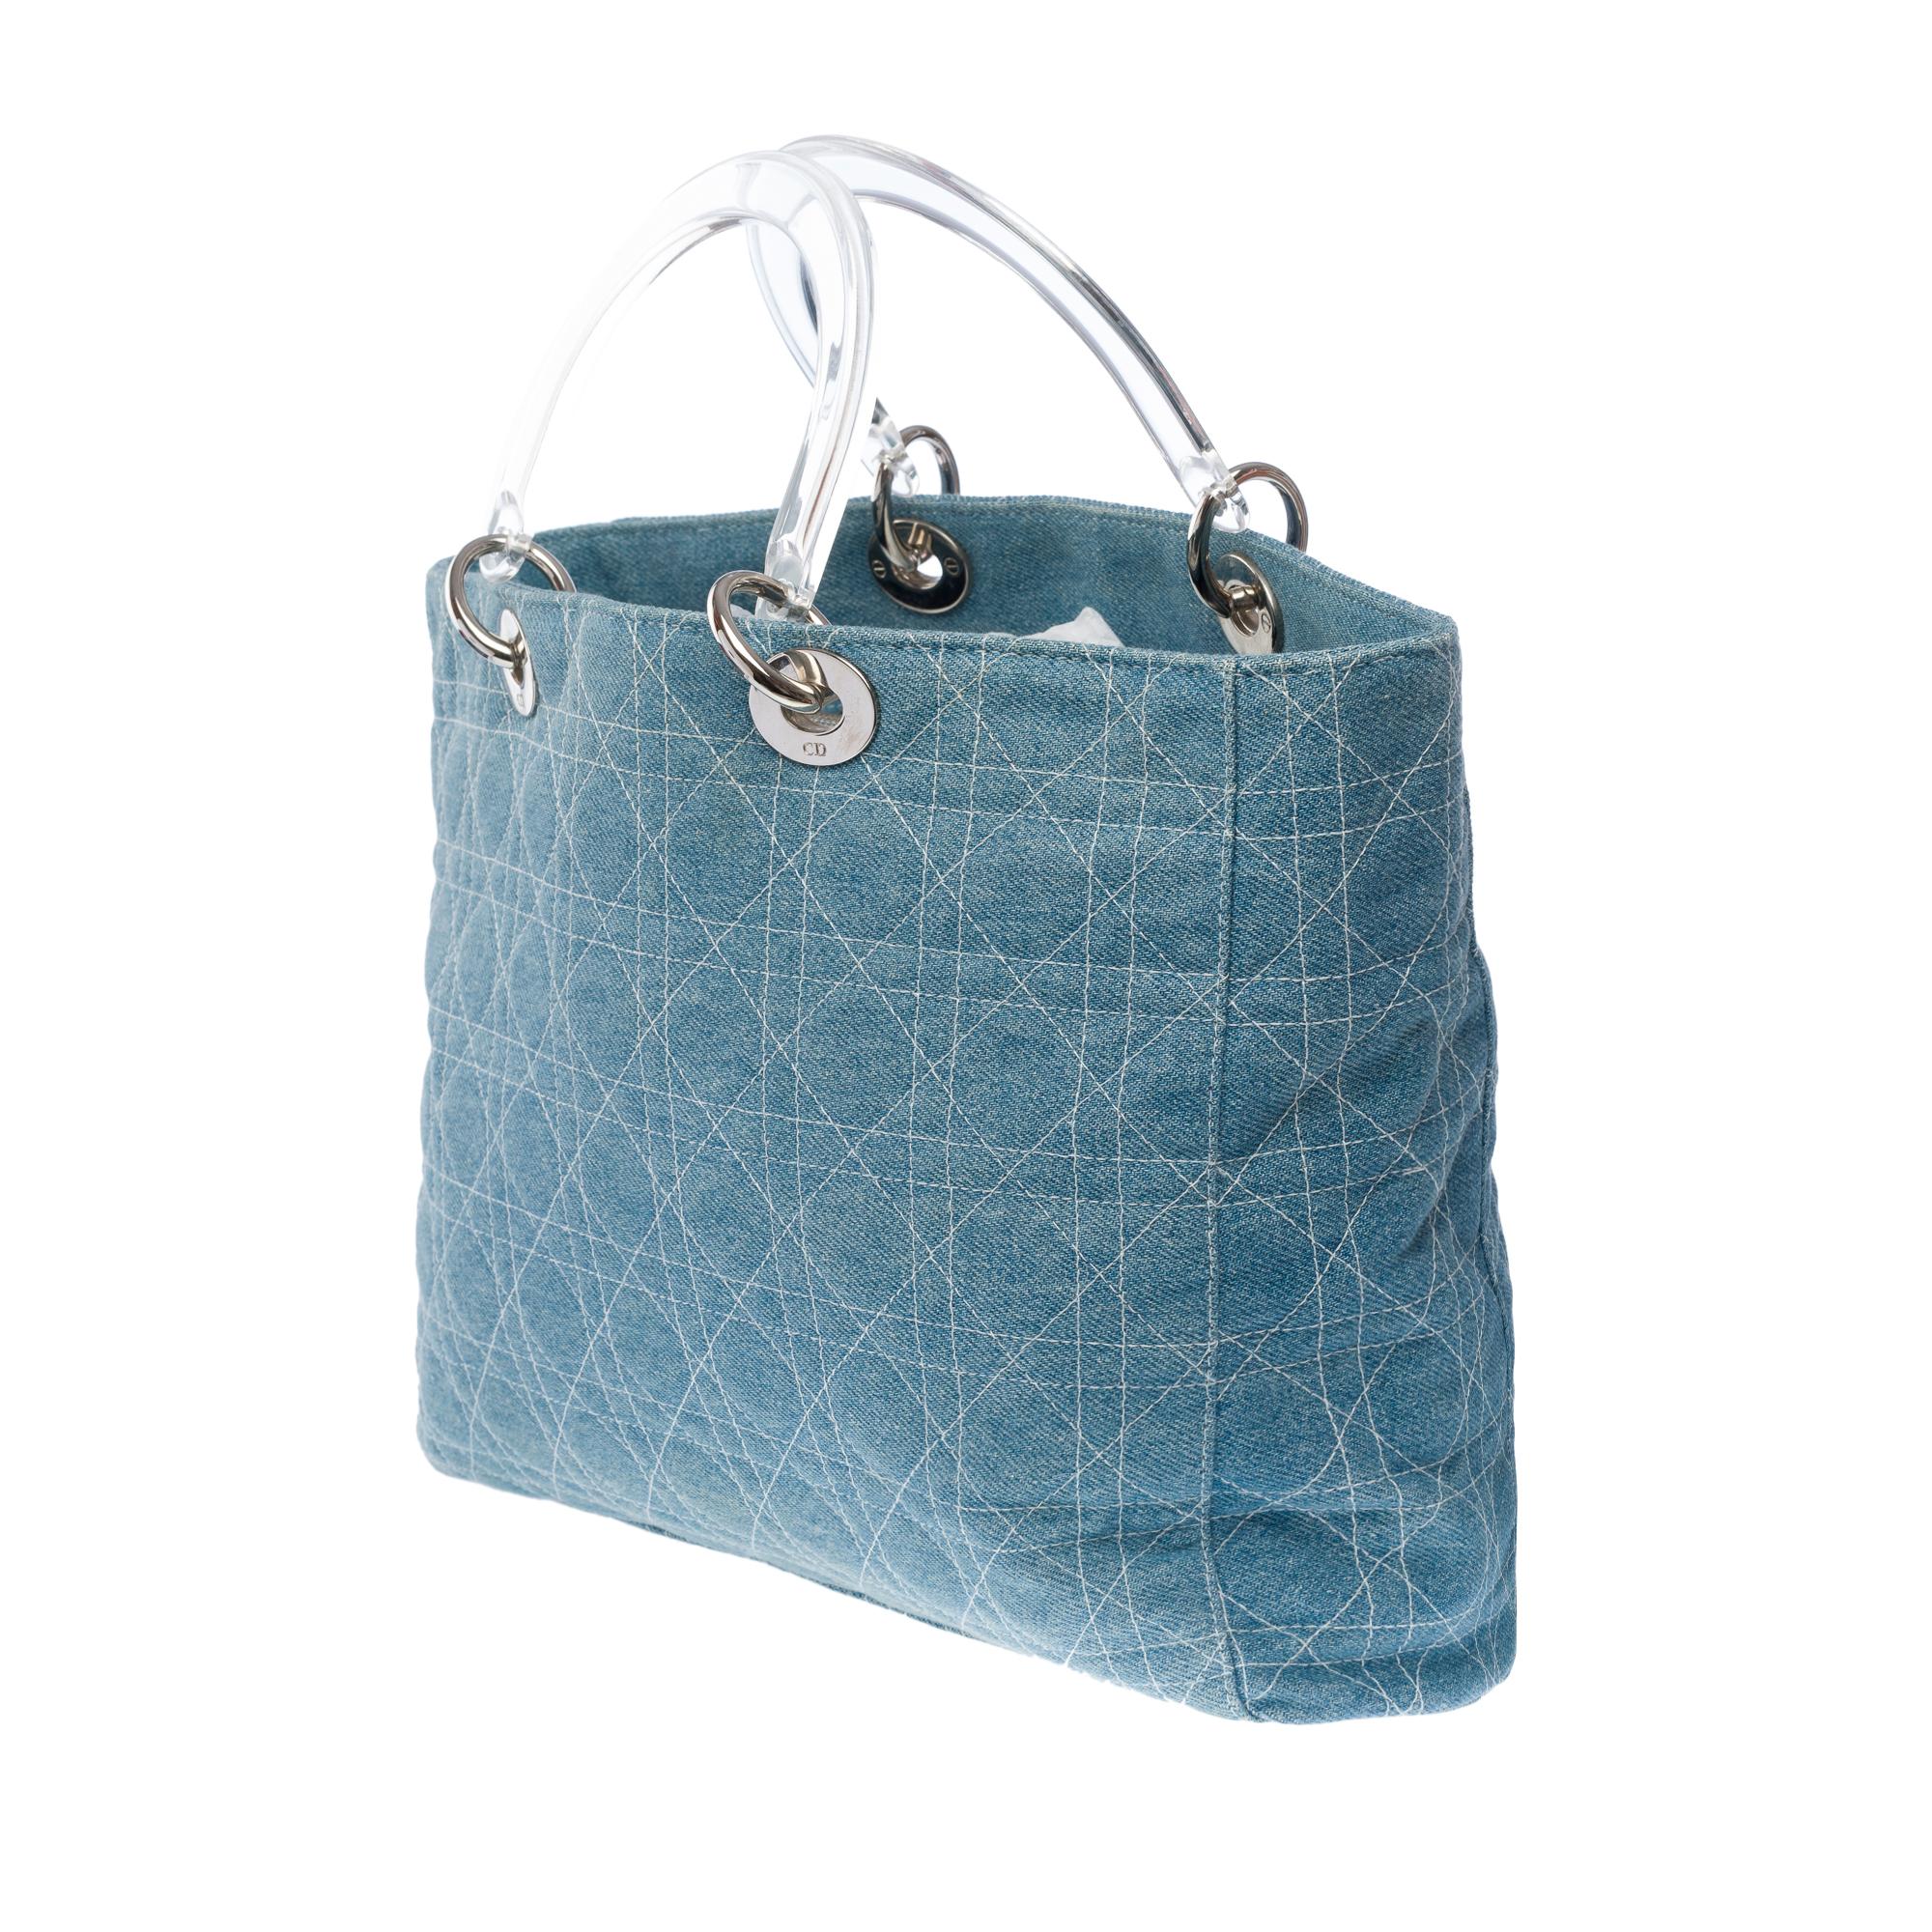 Women's Gorgeous Limited Edition Lady Dior GM handbag strap in blue denim , SHW